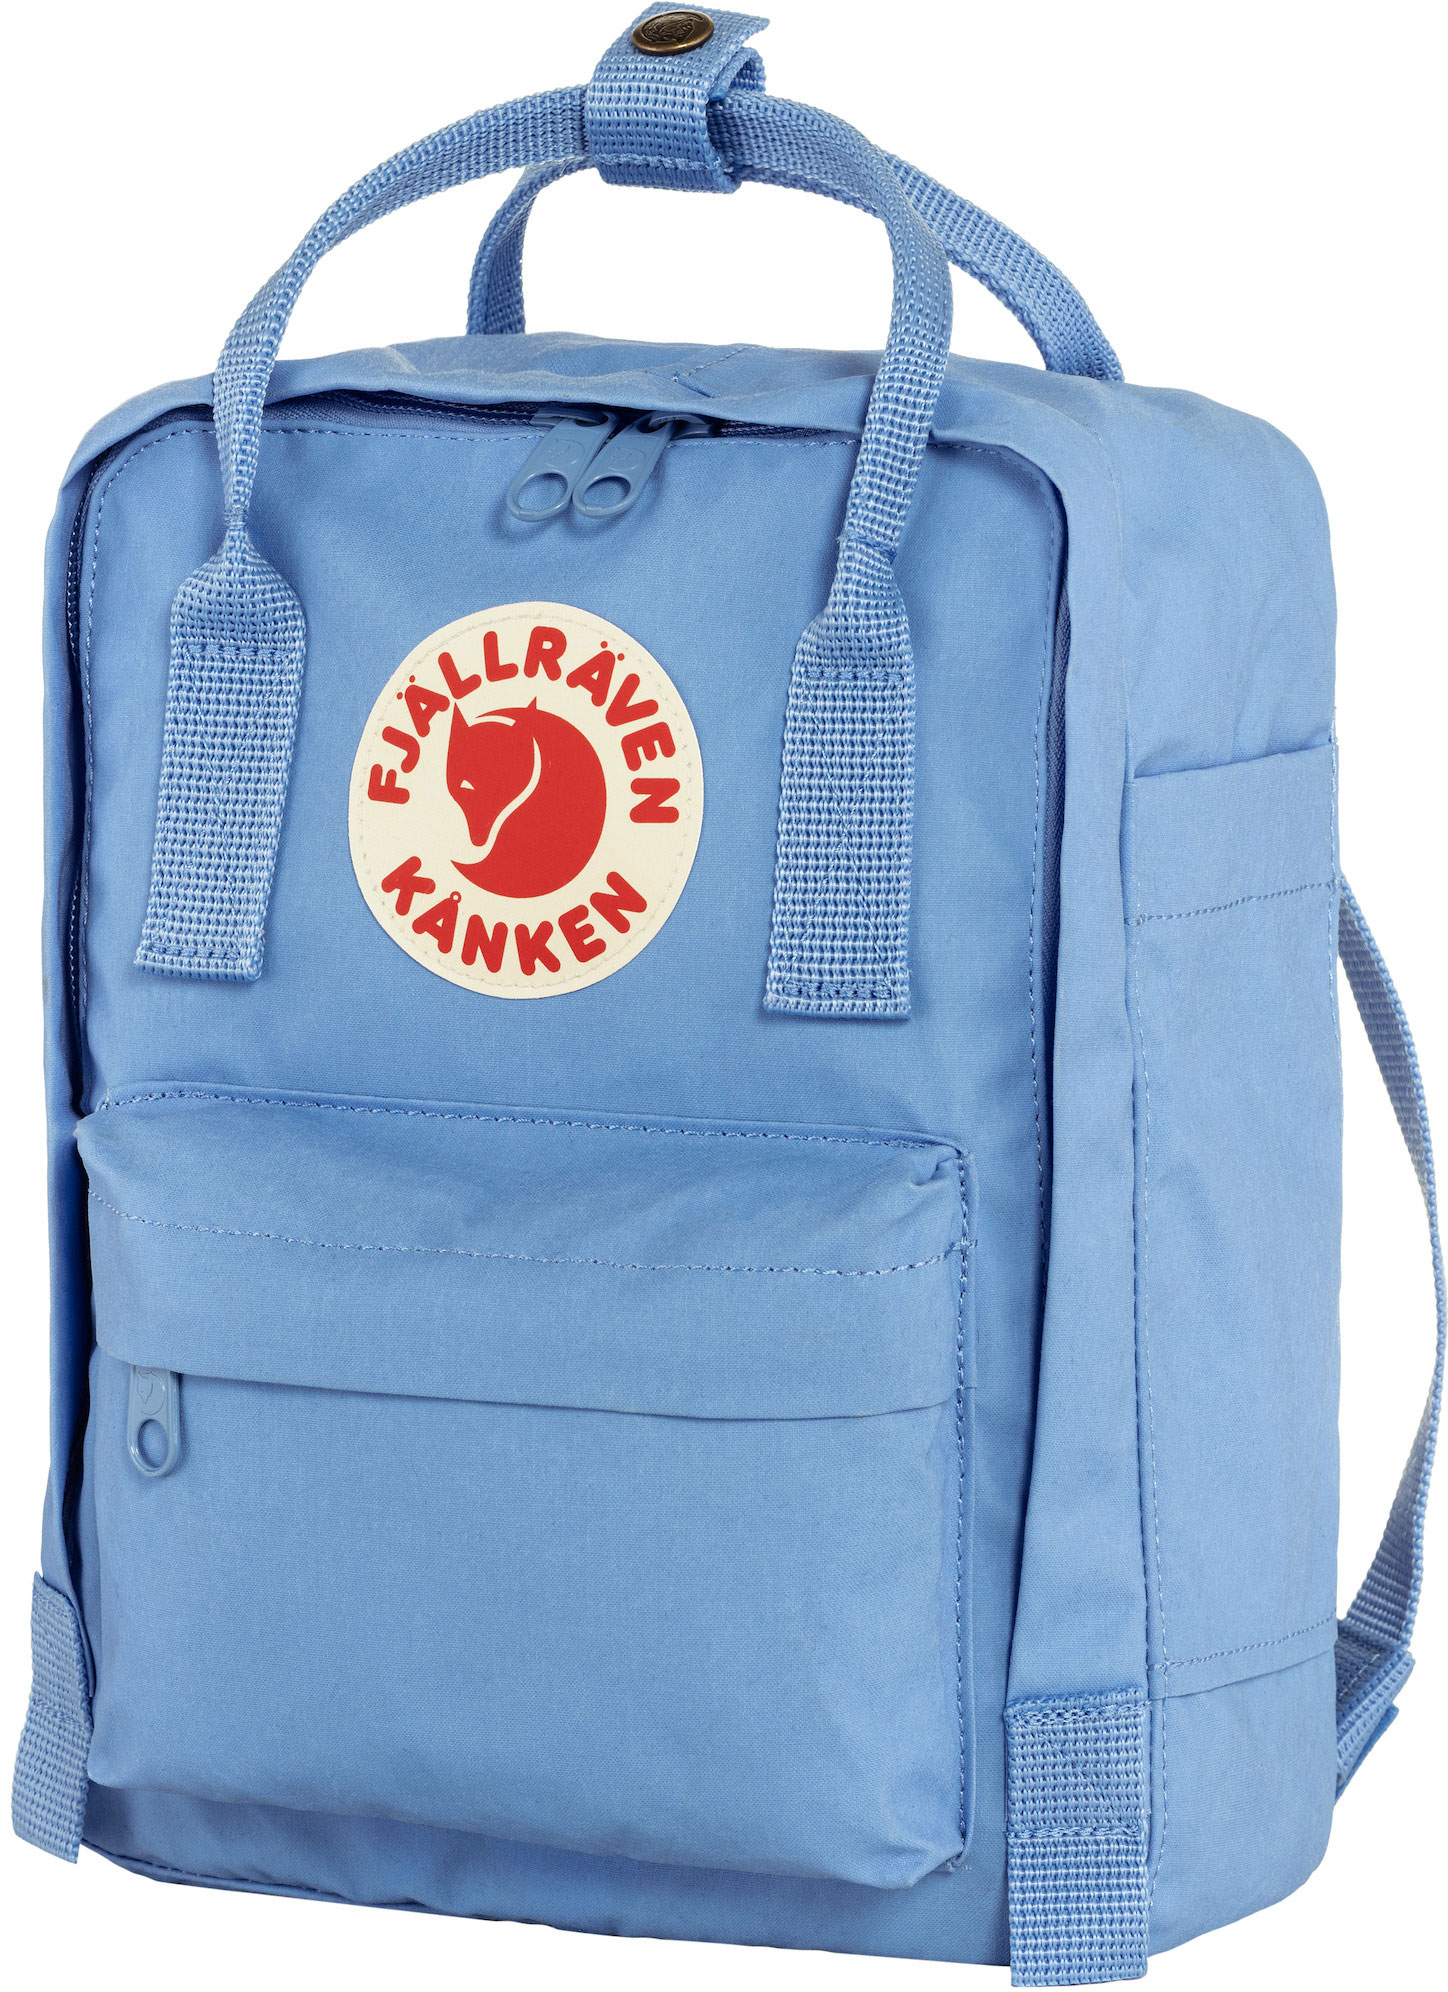 atmosfeer over het algemeen Handvest Fjallraven Kanken Mini Backpack | Urban & School Packs | CampSaver.com